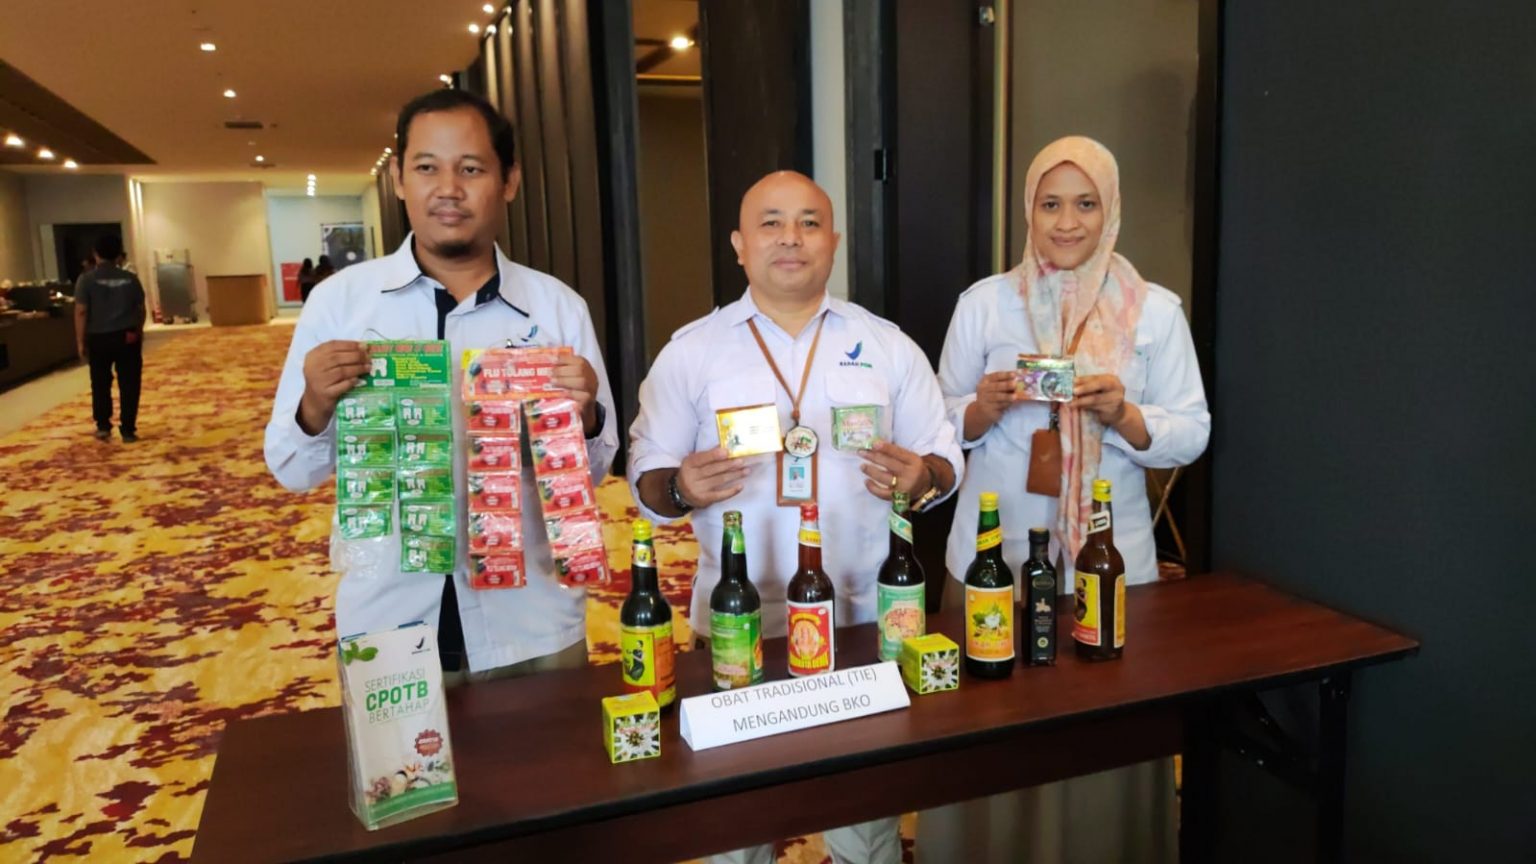 Balai Besar Pengawas Obat dan Makanan di Serang (BBPOM) Serang mengambil tindakan tegas untuk melindungi masyarakat Banten dari ancaman produk obat dan makanan ilegal